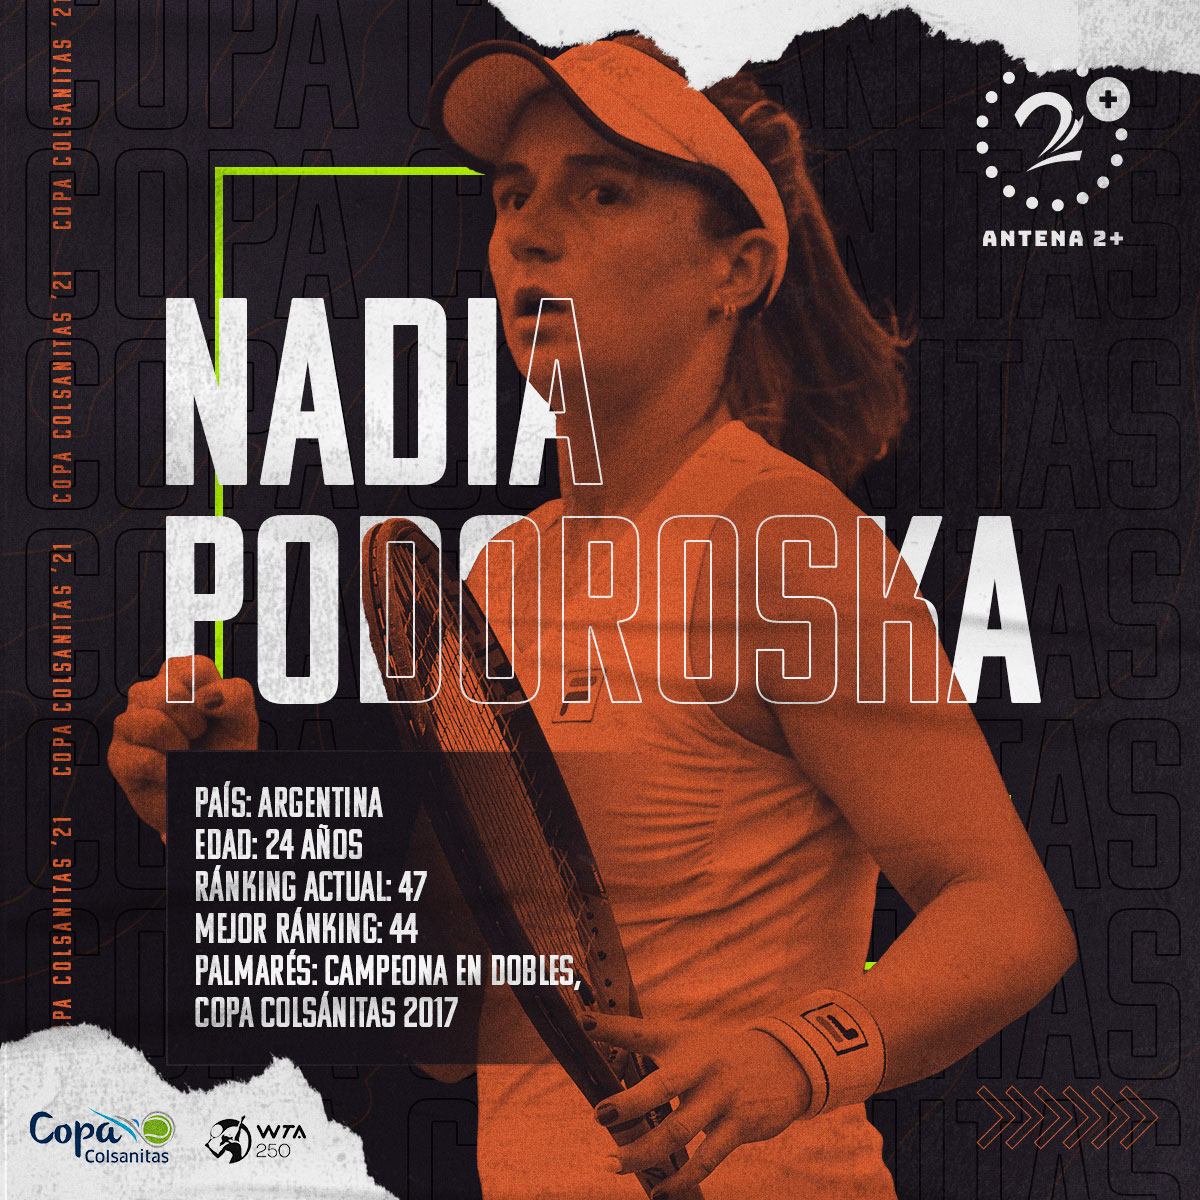 Nadia Podoroska